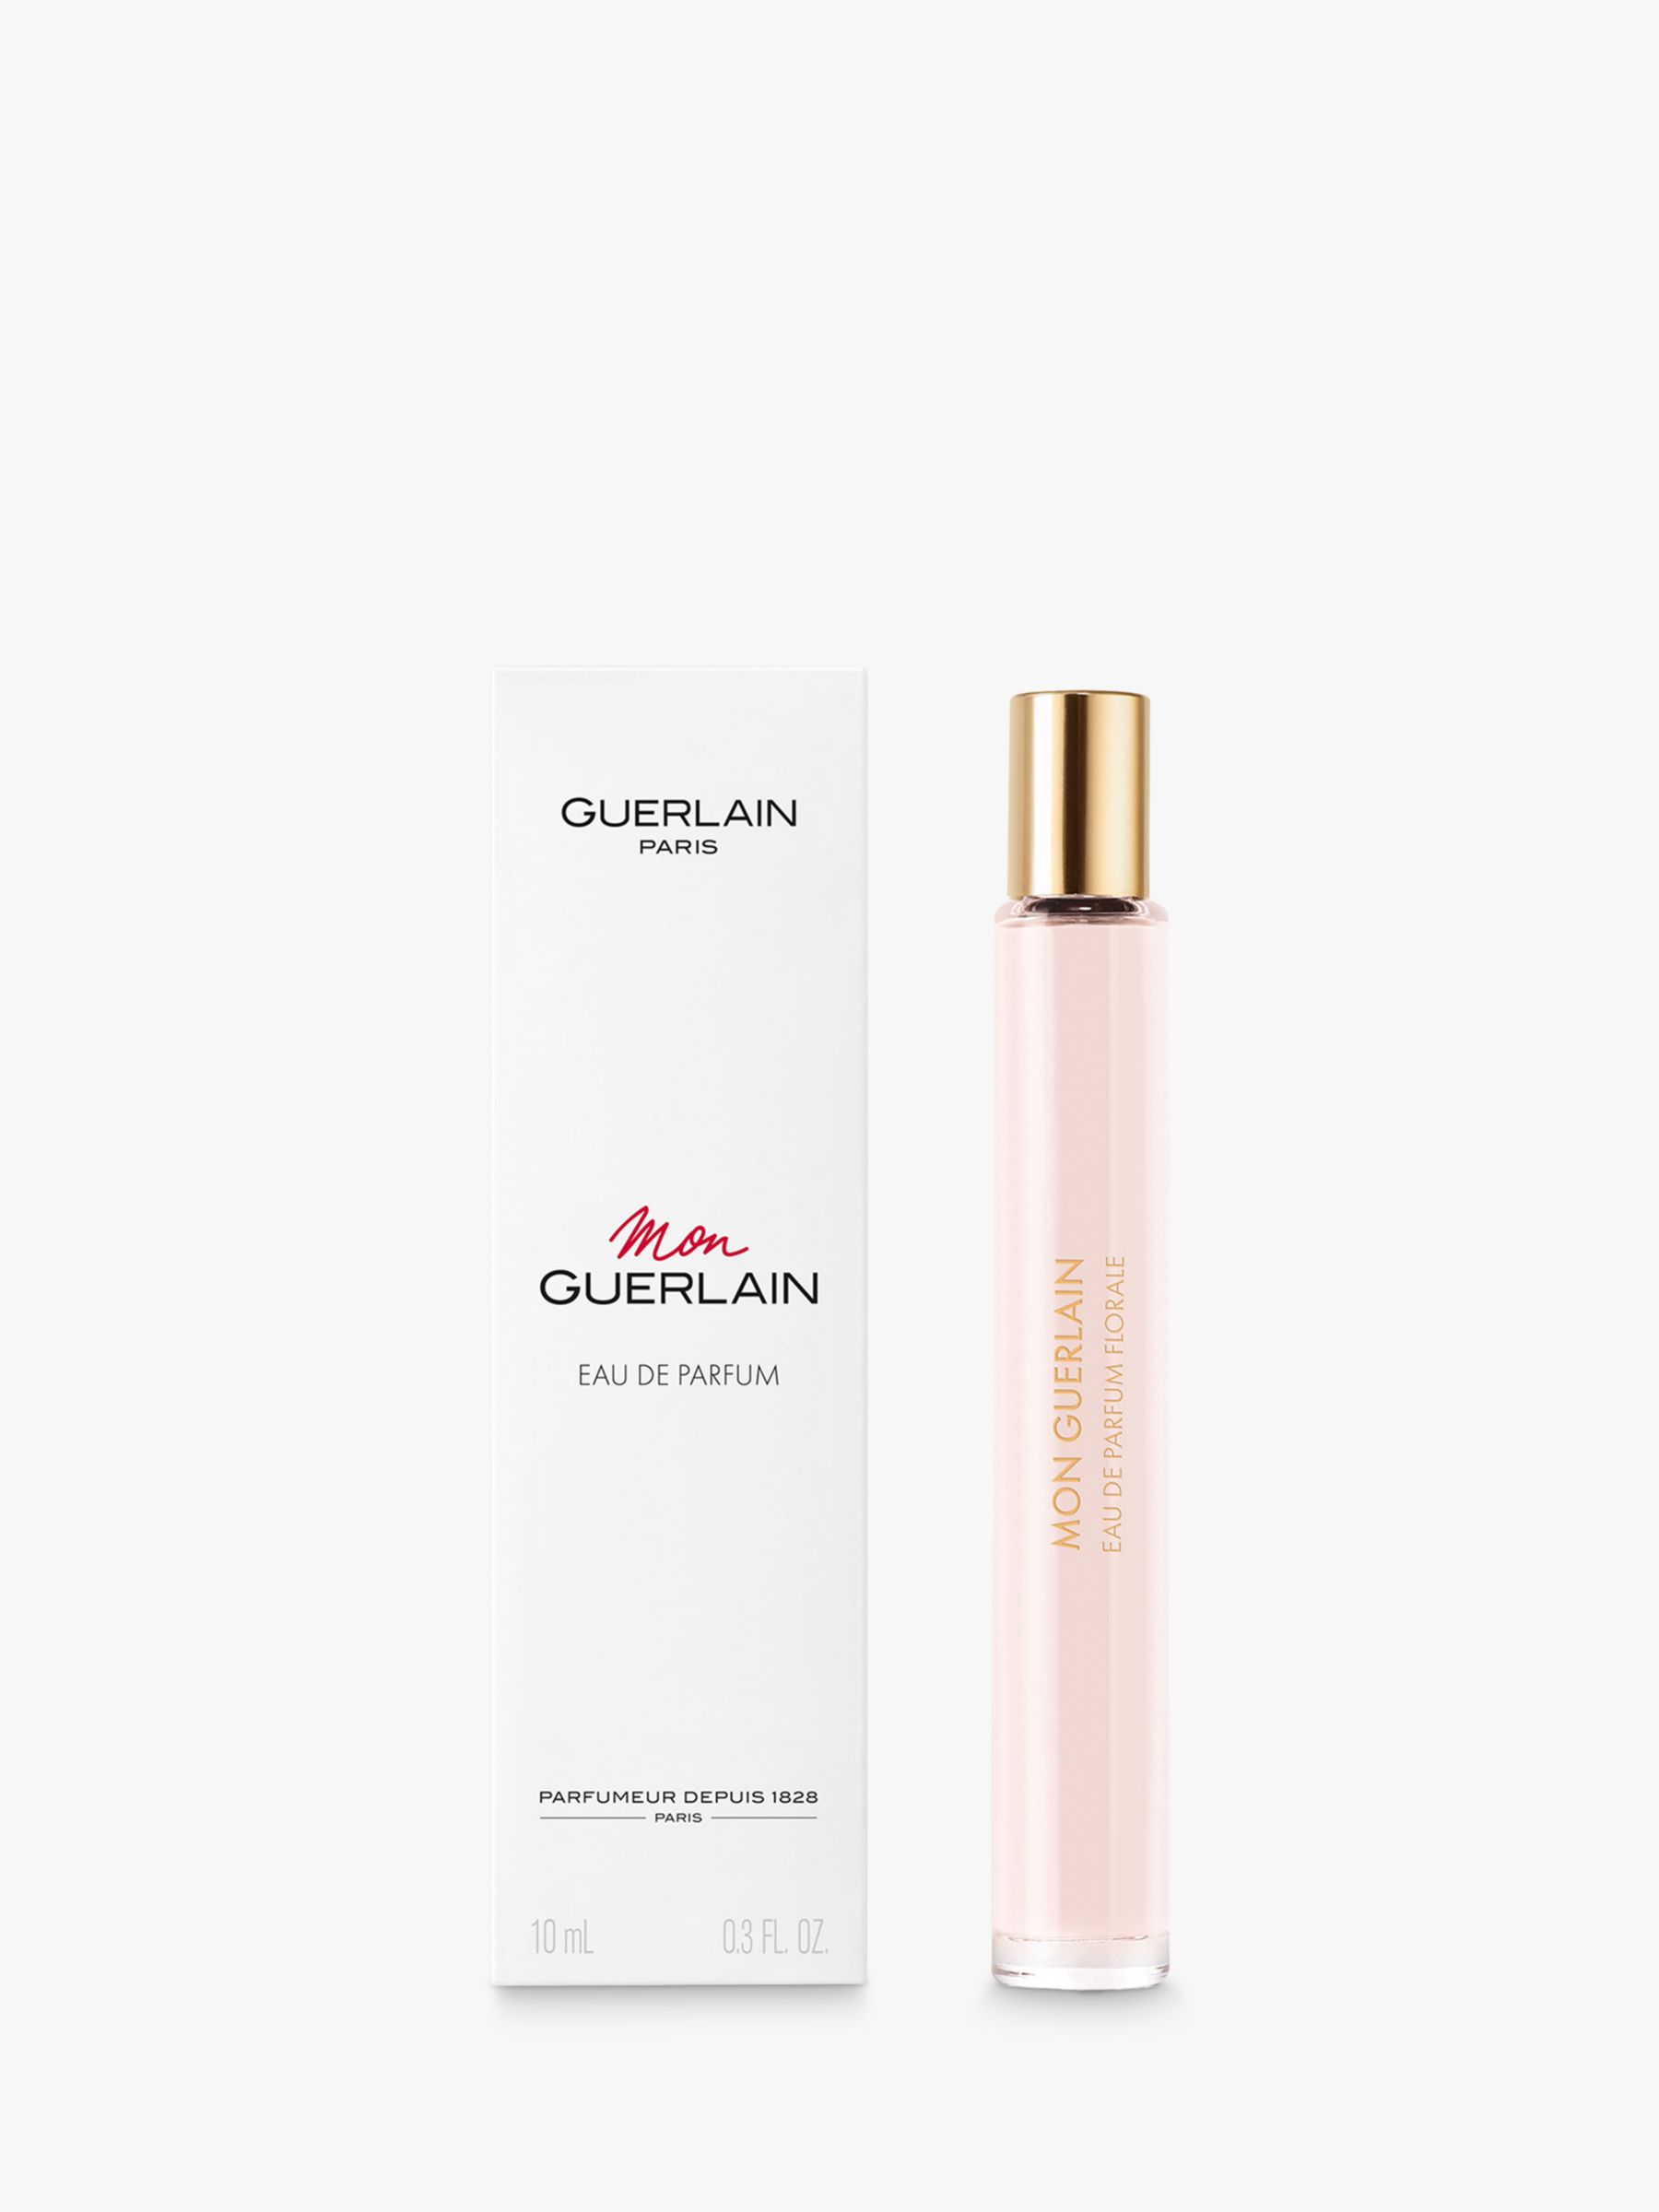 Guerlain Mon Guerlain Eau de Parfum Florale, Travel Size, 10ml